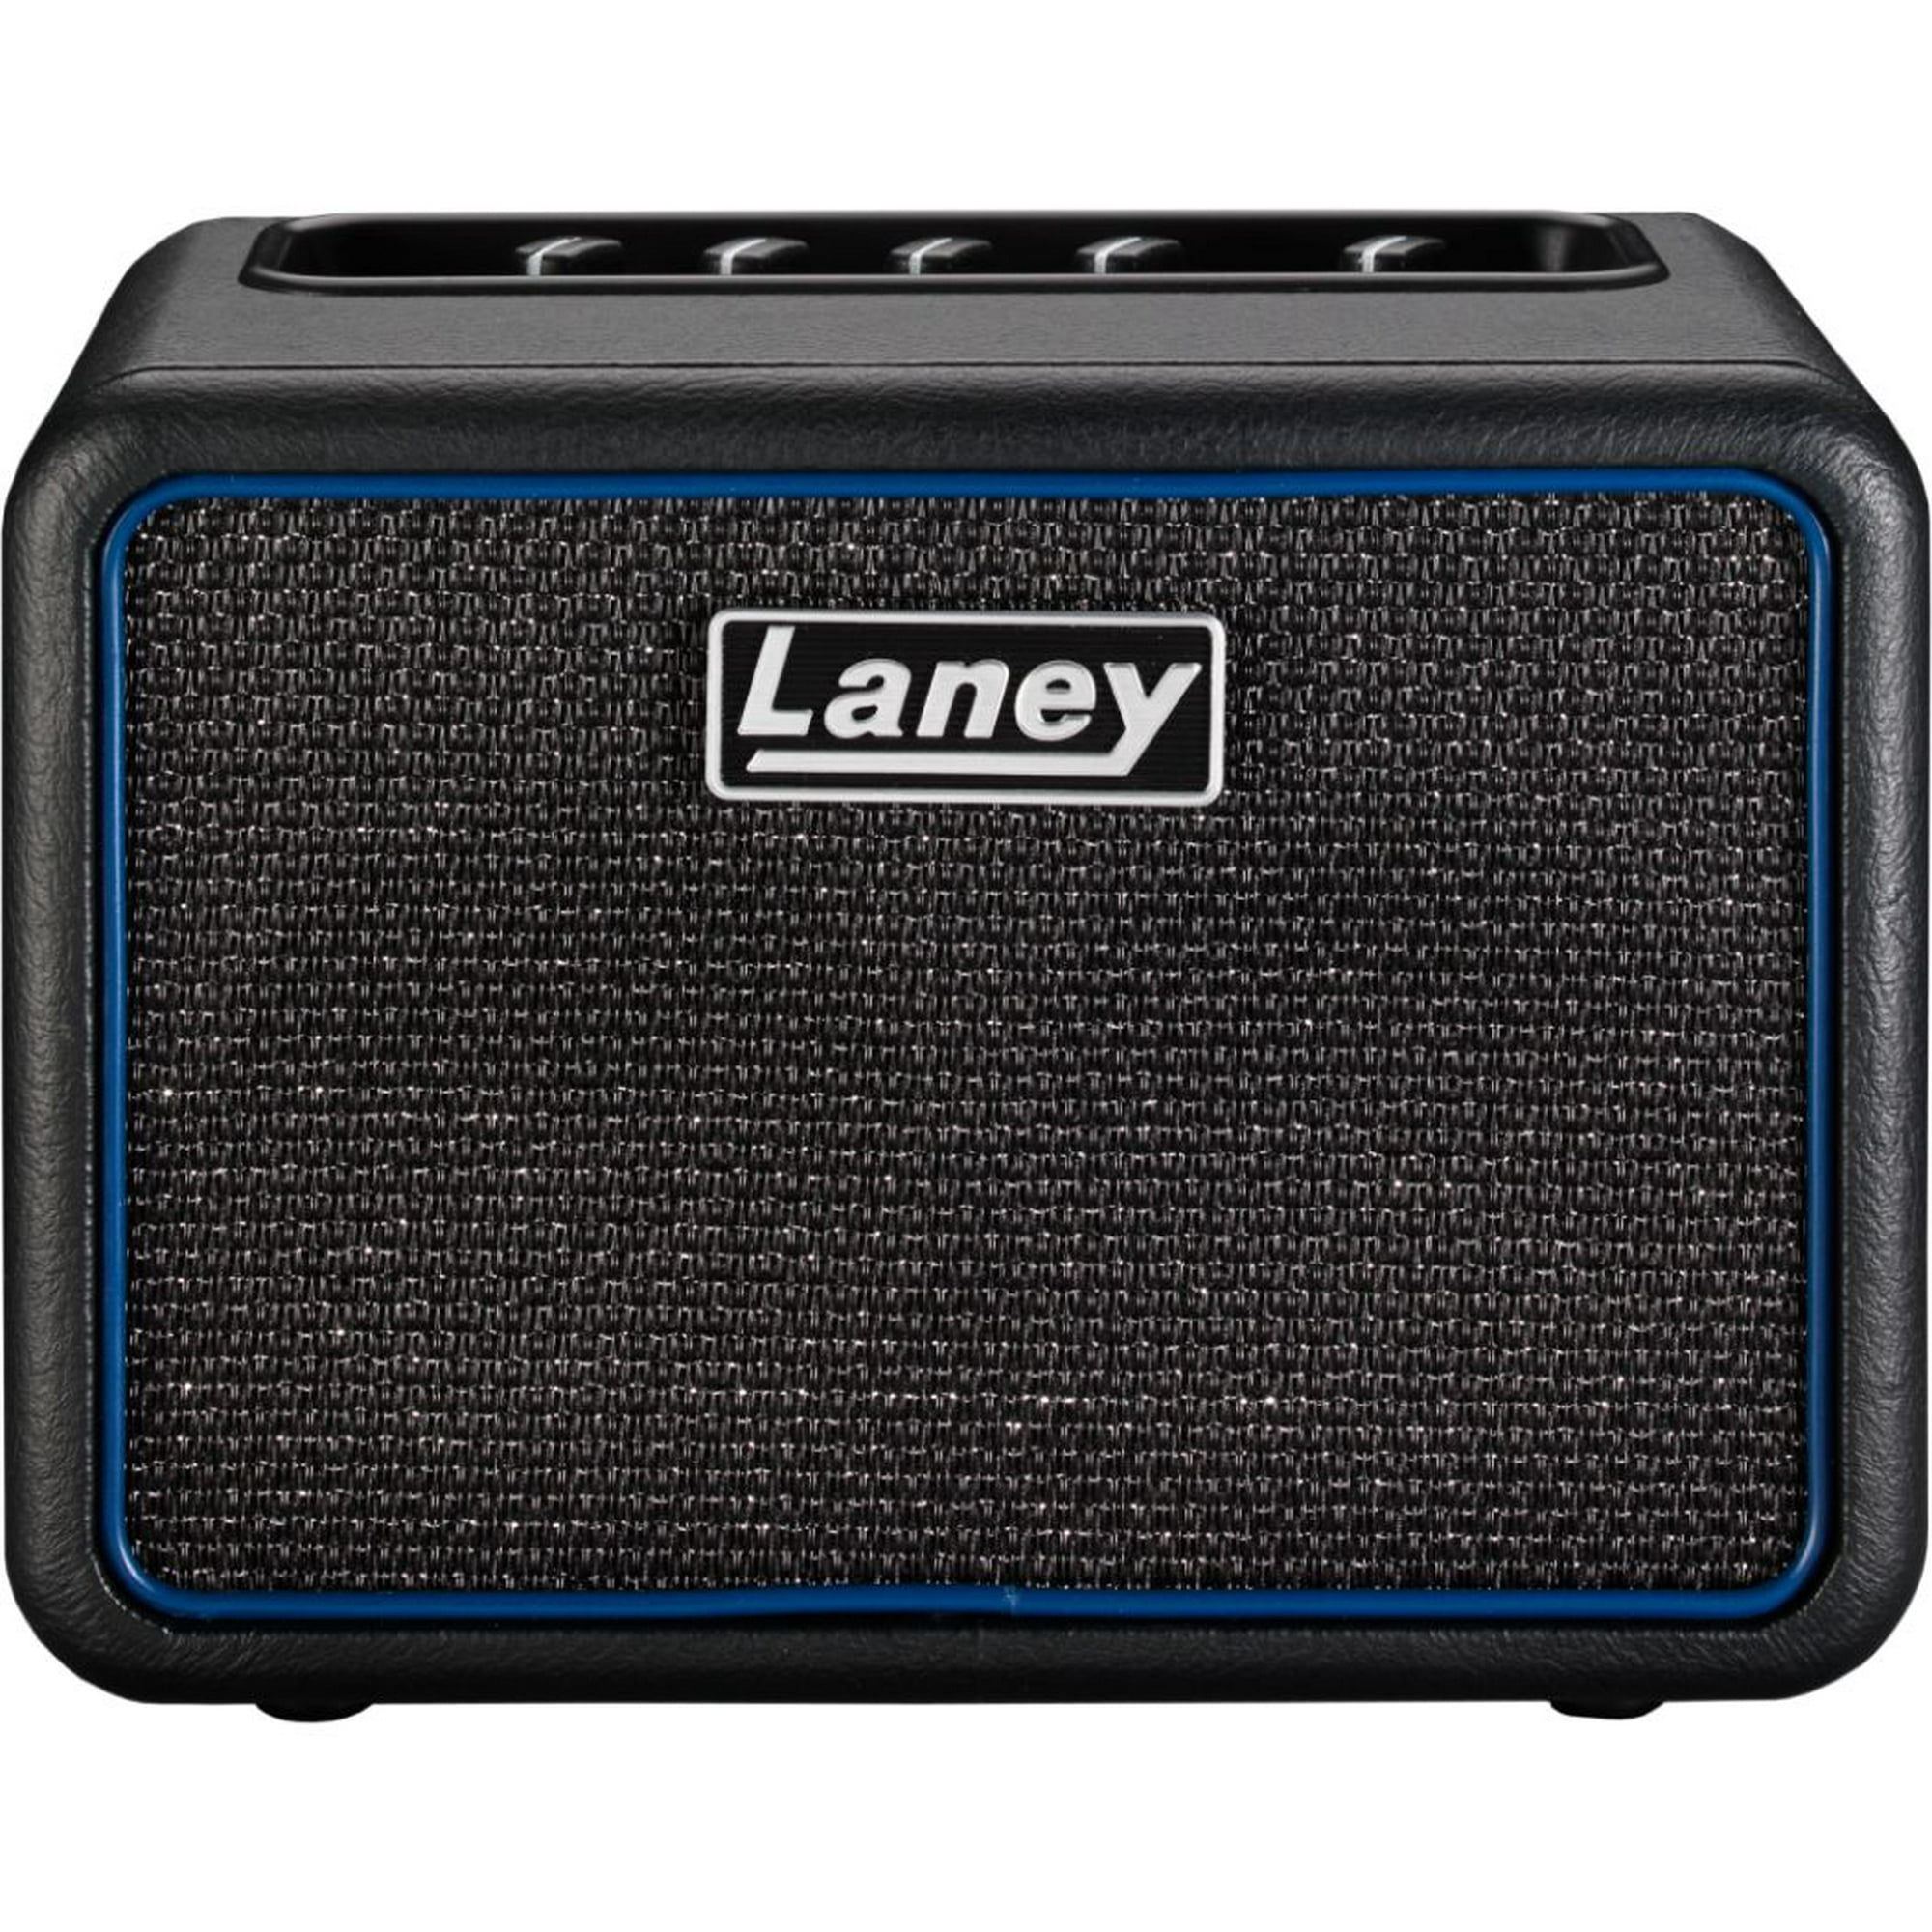 Comprar Laney Ministack Iron Mini Amplificador Negro